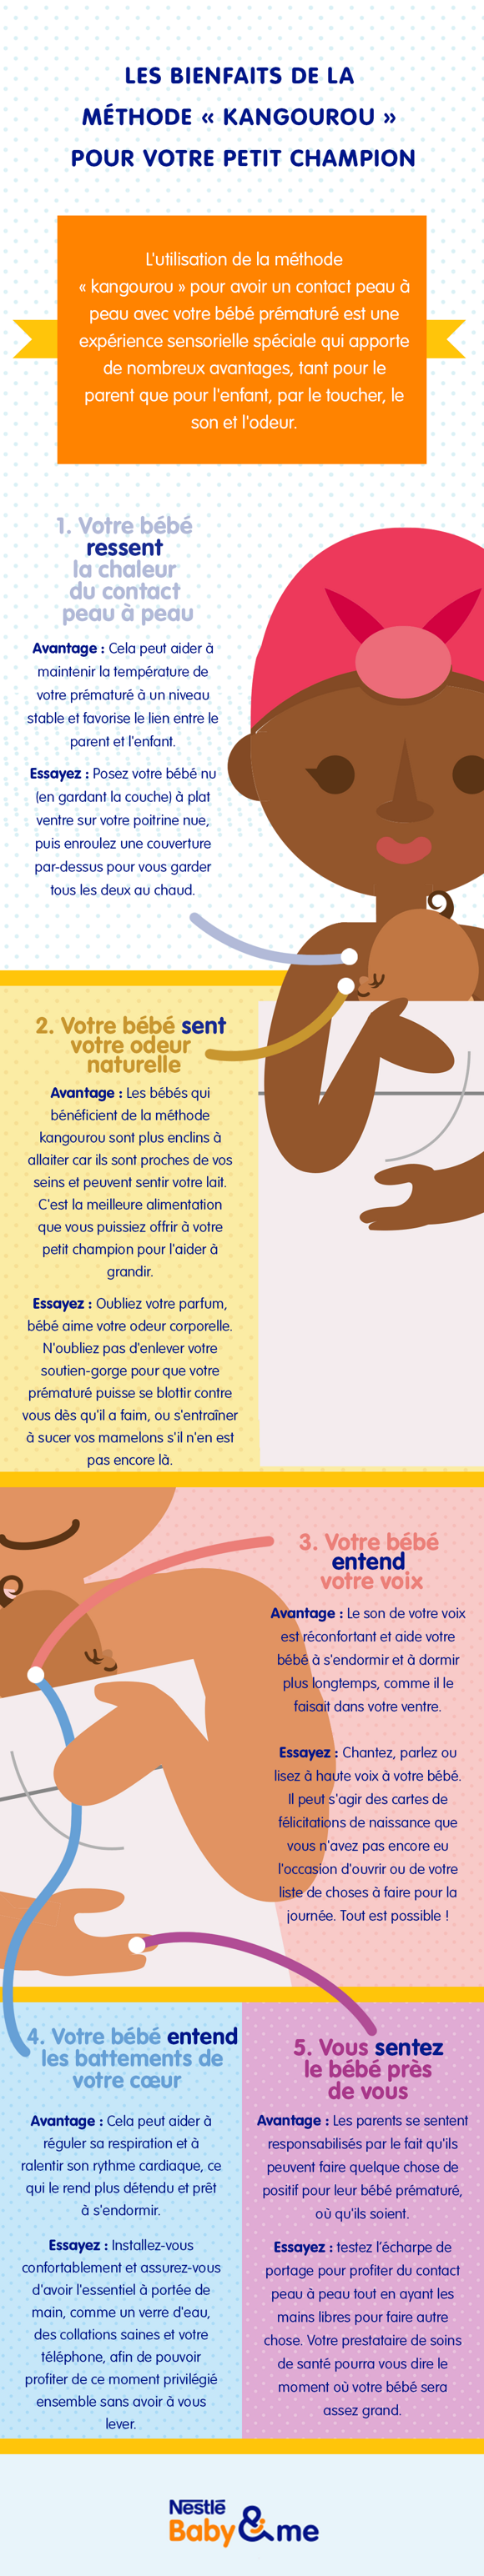 infographie avec les explications de la méthode kangourou  pour bébé prématuré